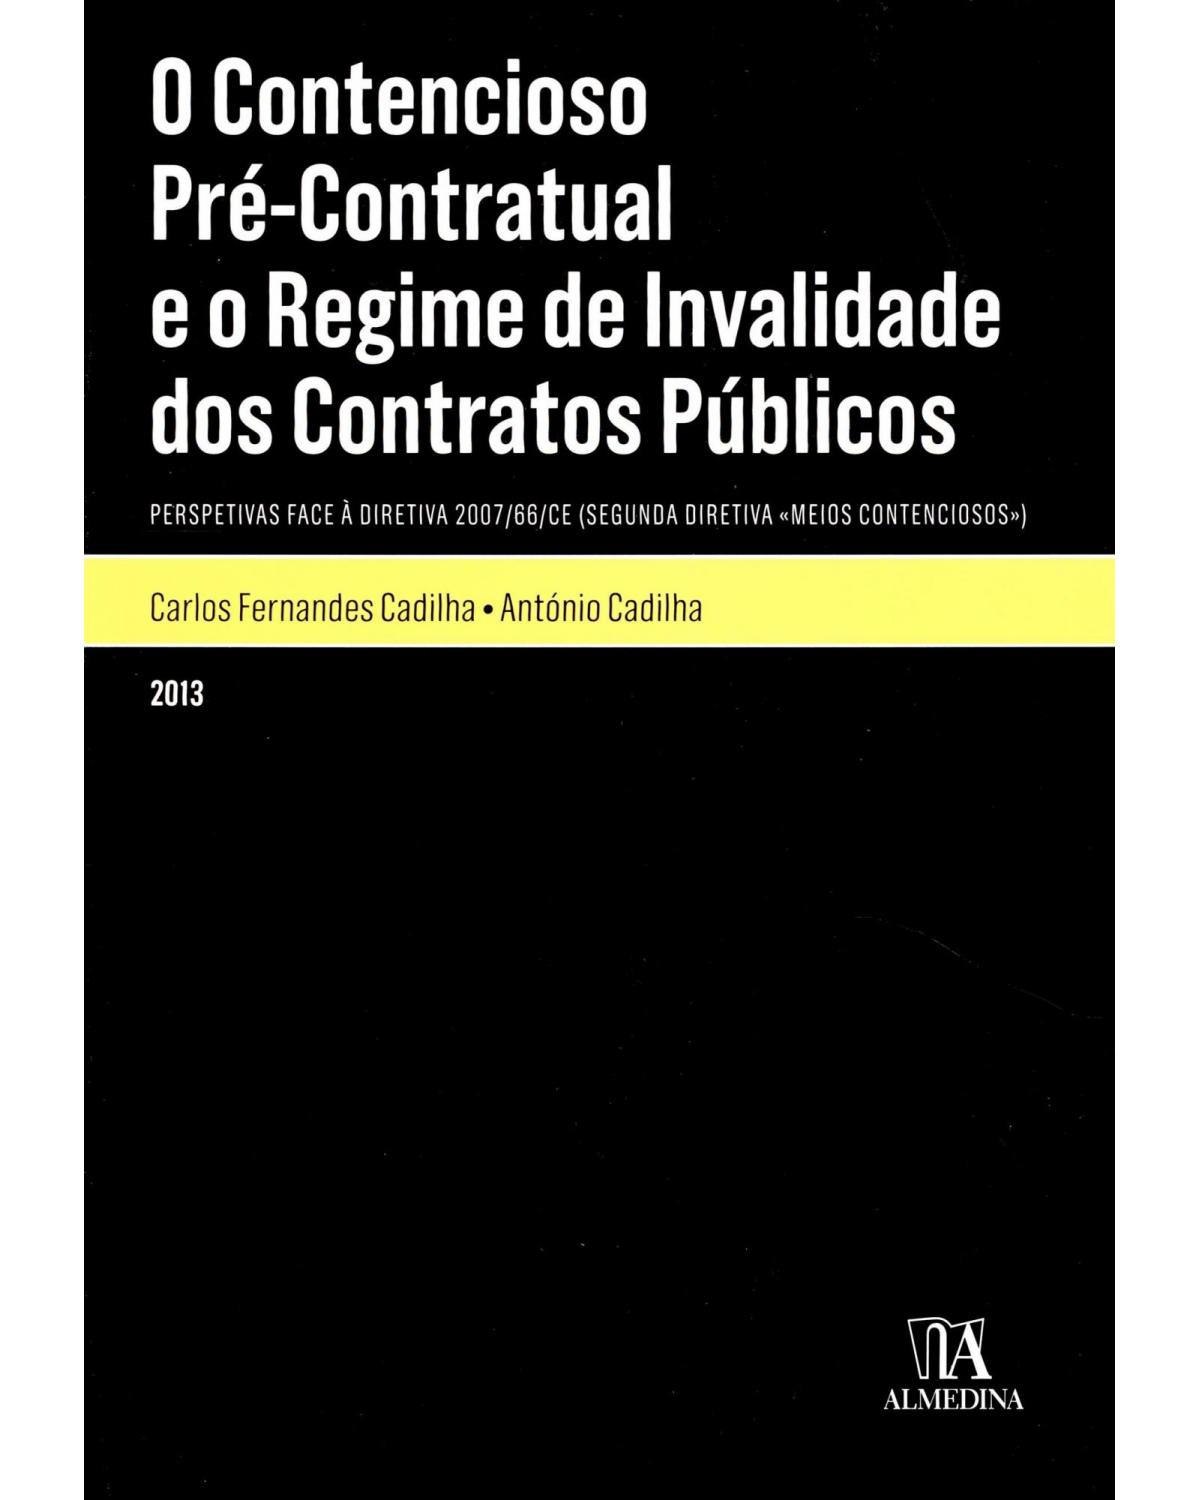 O contencioso pré-contratual e o regime de invalidade dos contratos públicos - perspetivas face à diretiva 2007/66/CE (segunda diretiva «Meios Contenciosos») - 1ª Edição | 2013